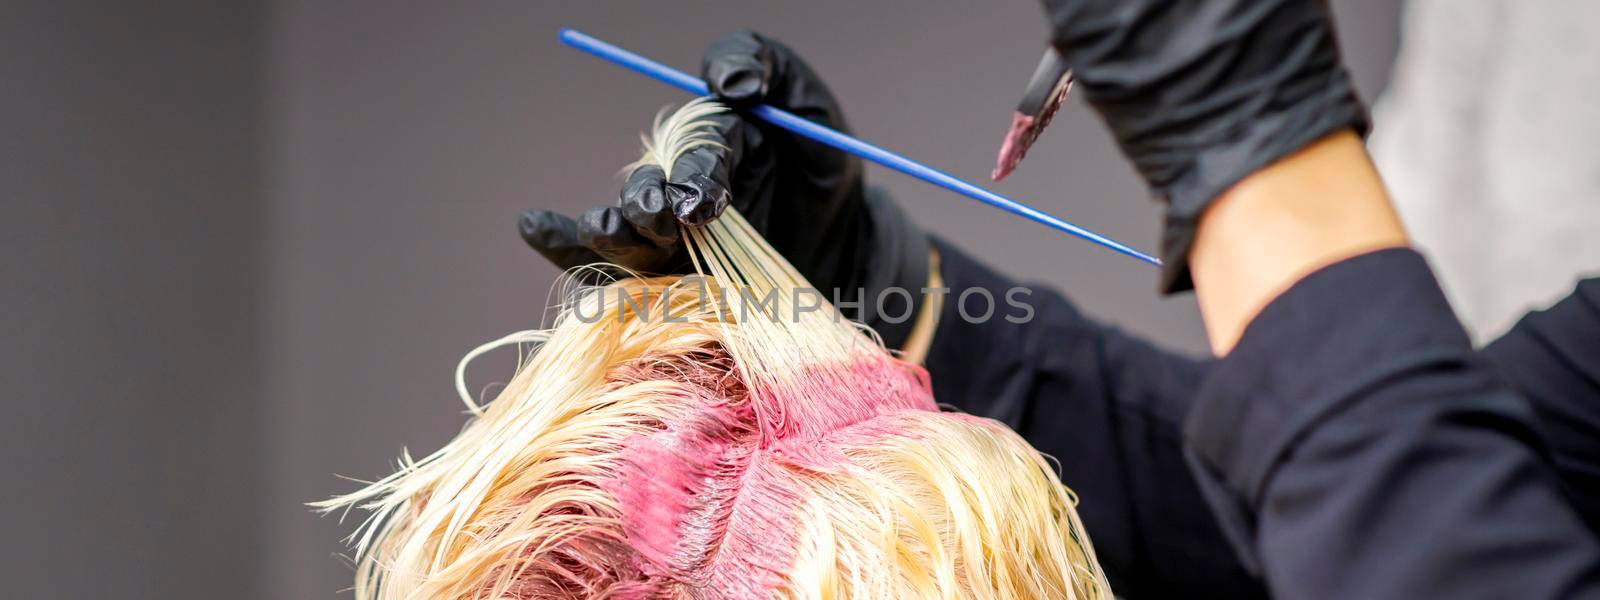 Hairdresser's hands applying pink dye by okskukuruza